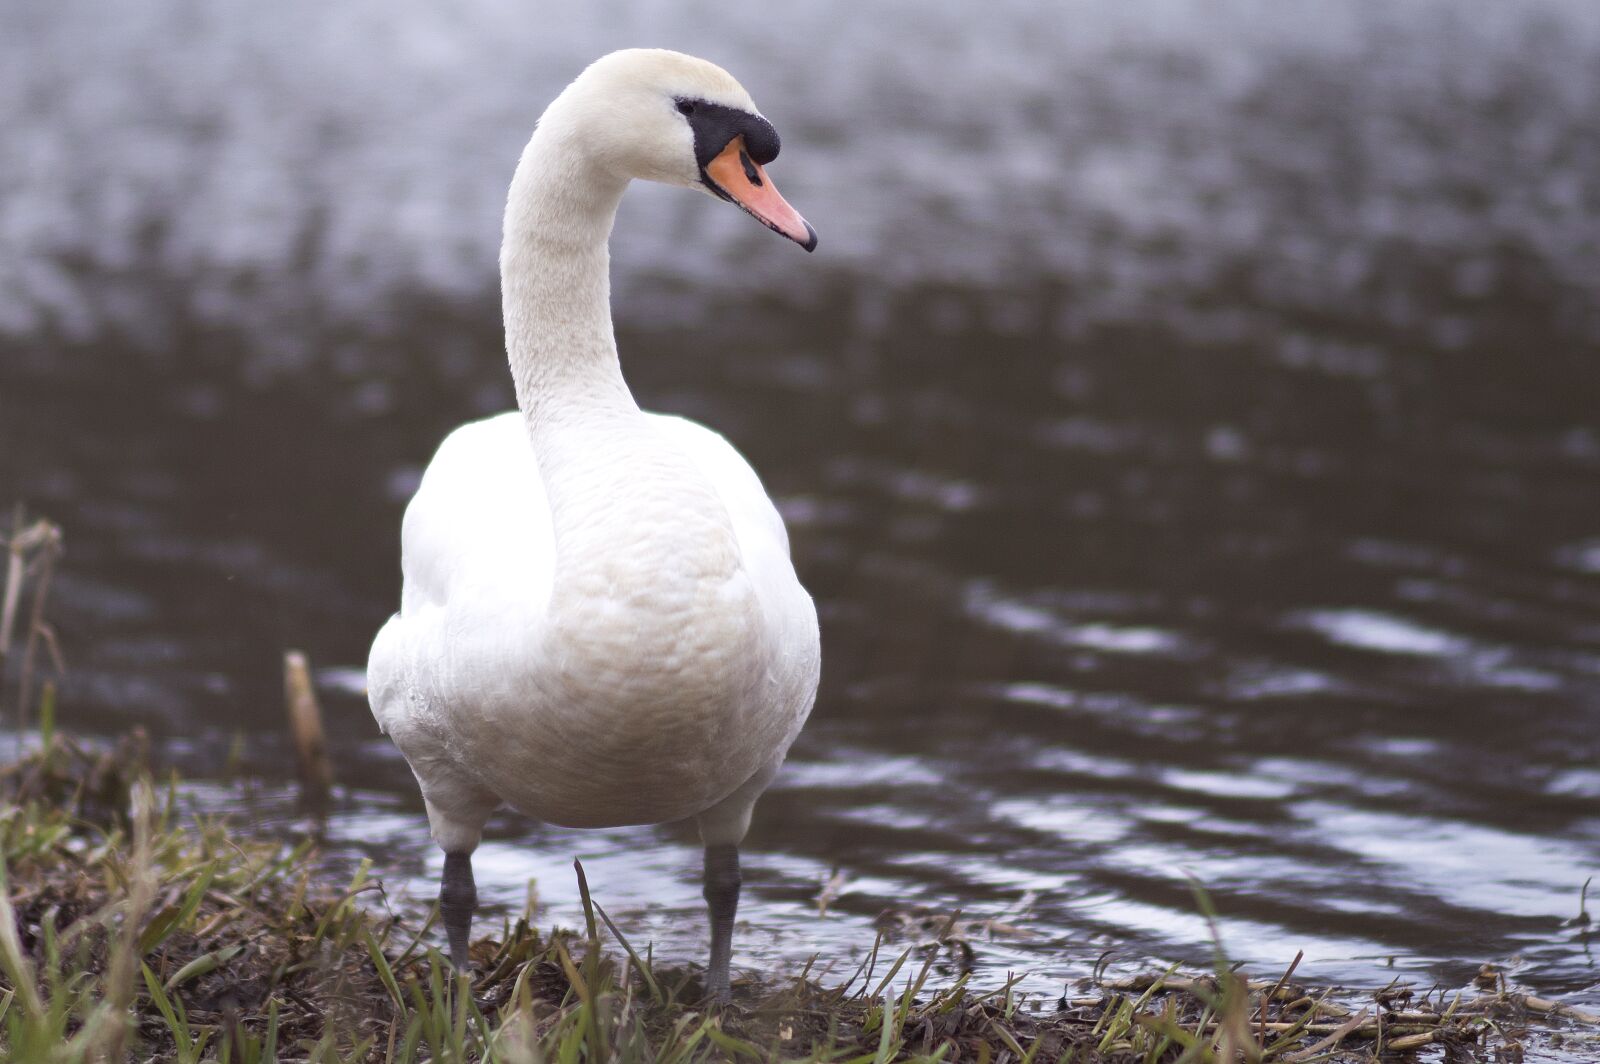 Nikon D3200 sample photo. Bird, swan, nature photography